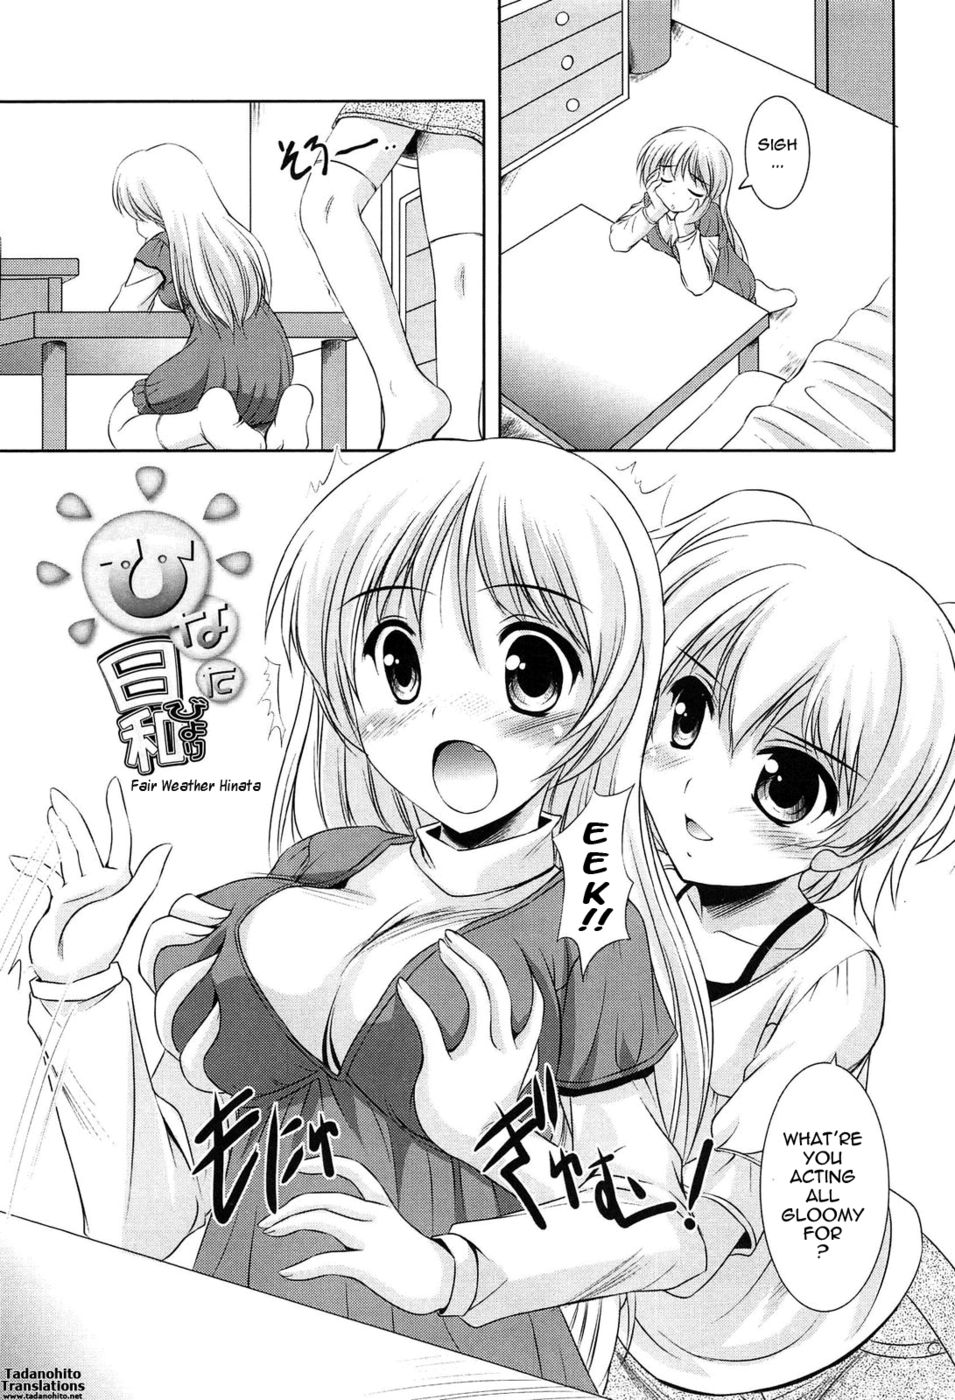 Hentai Manga Comic-Fair Weather Hinata-Read-1